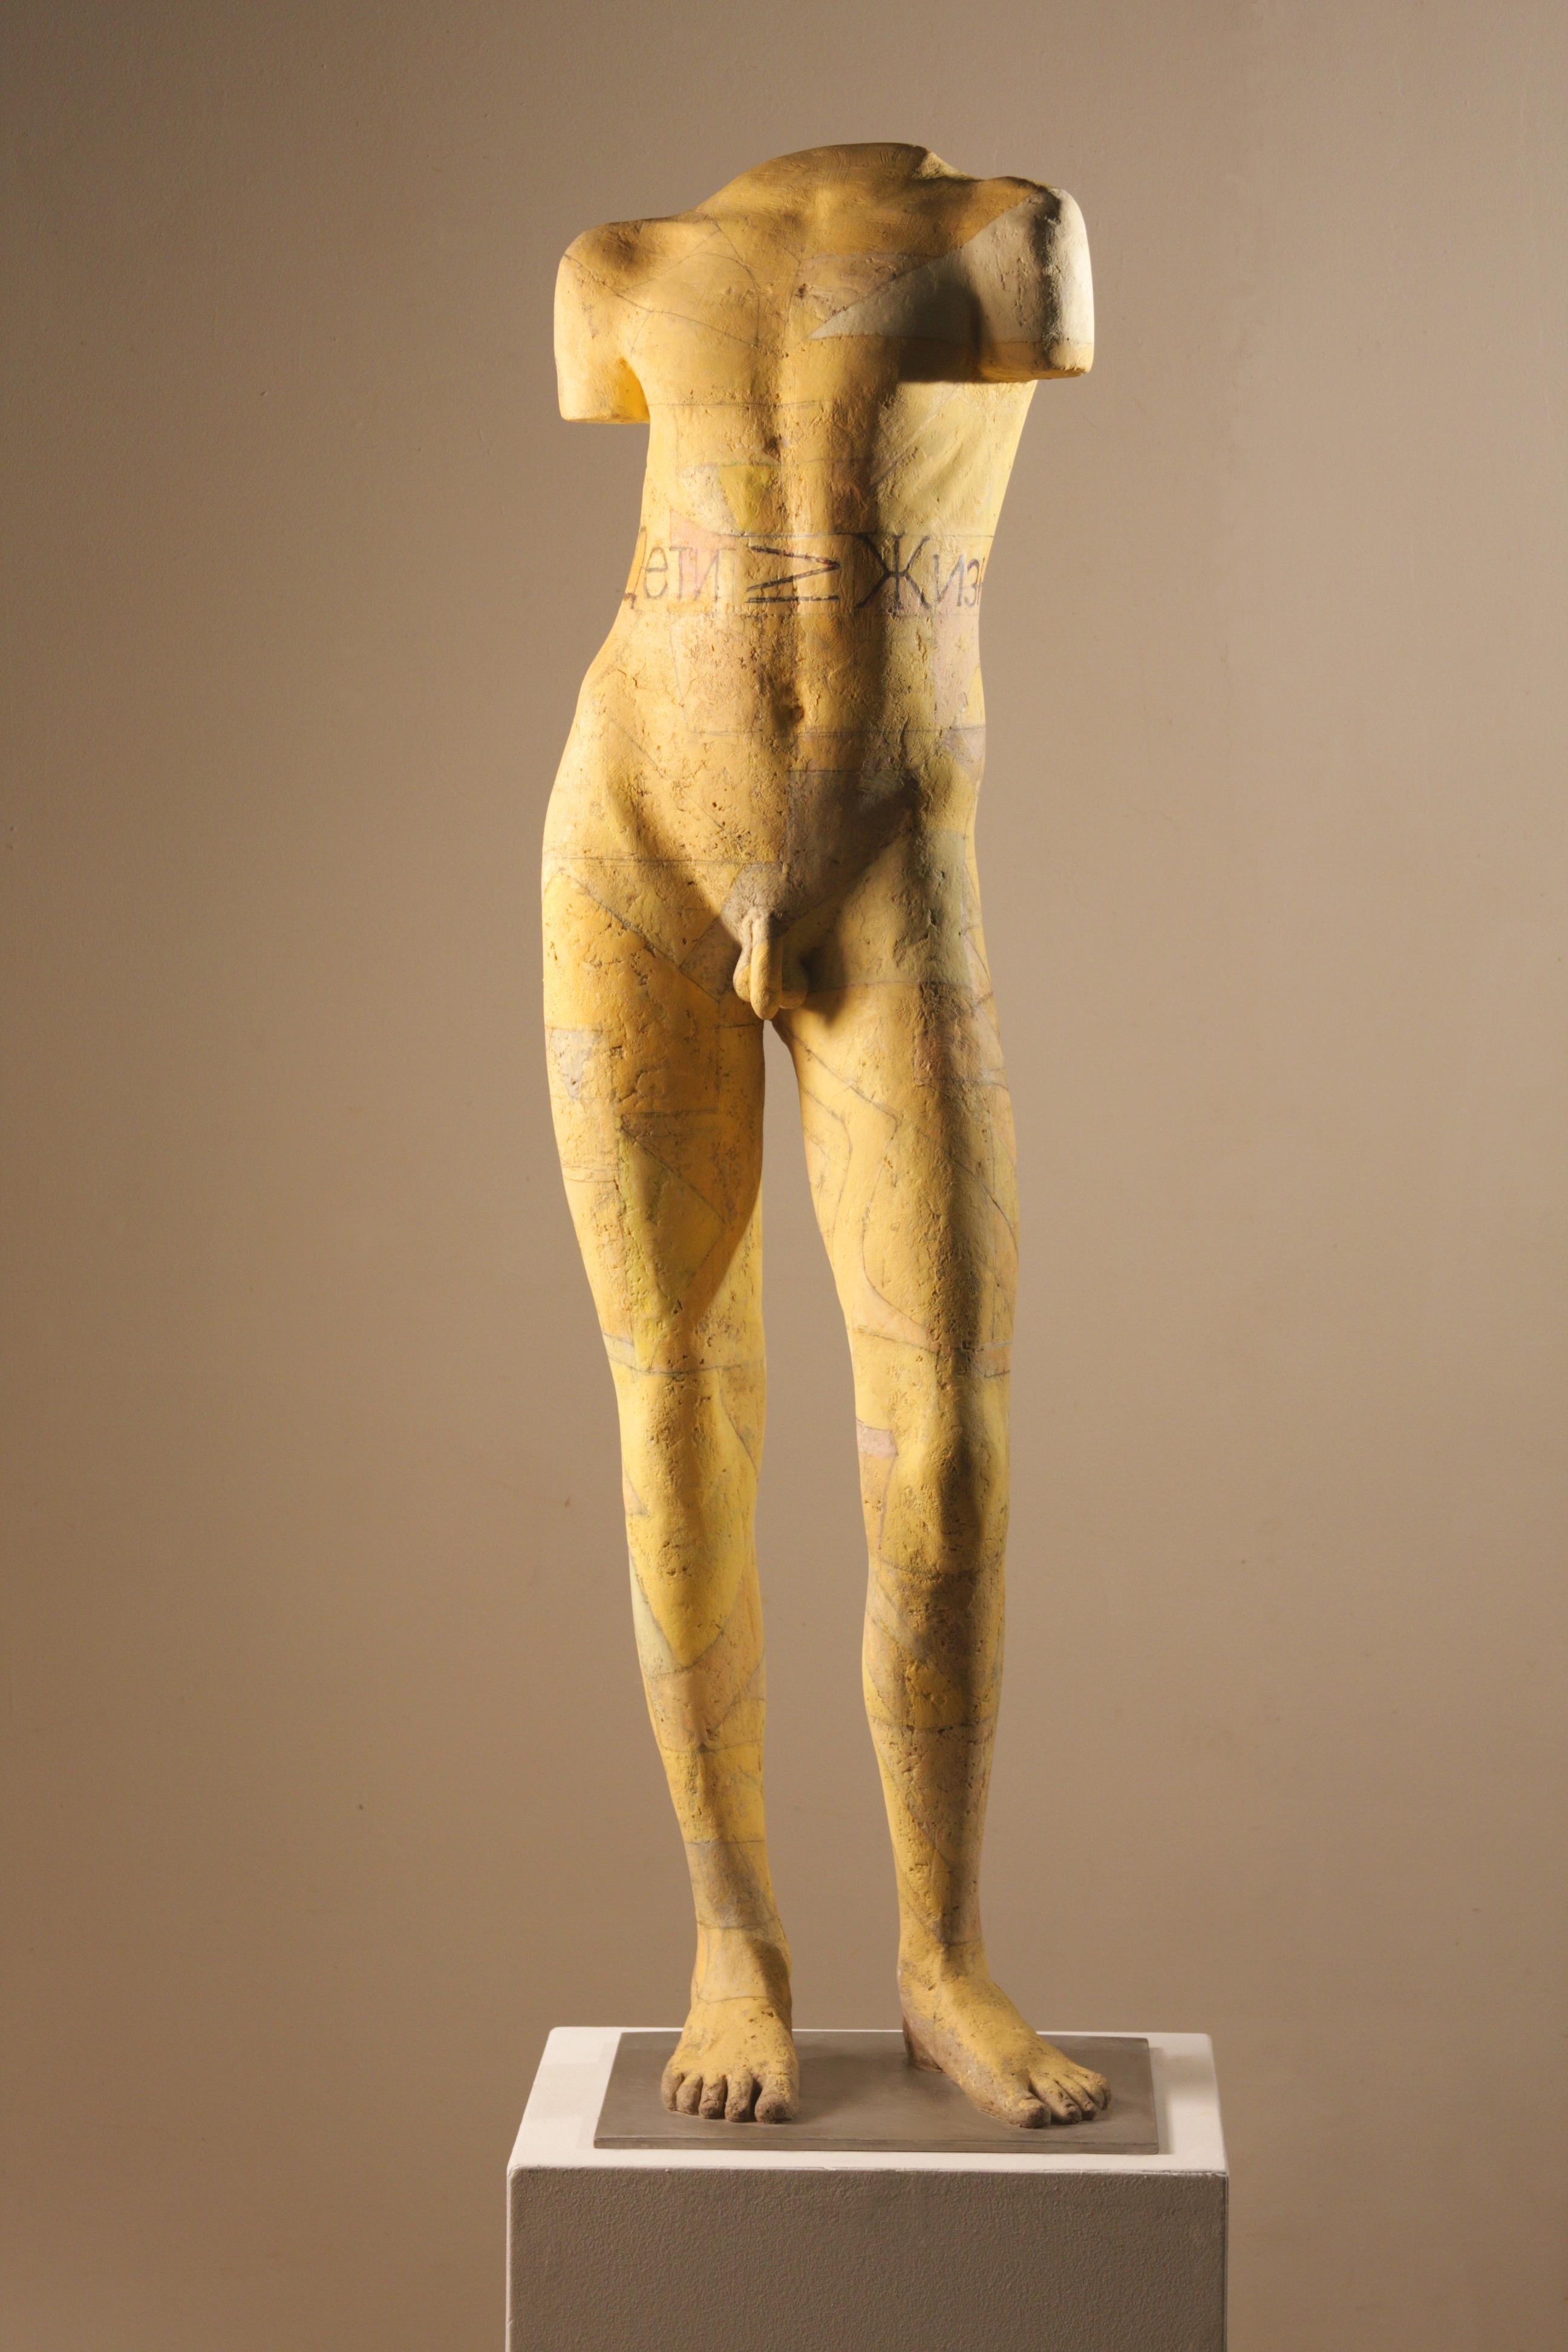 Dan Corbin Nude Sculpture - Life